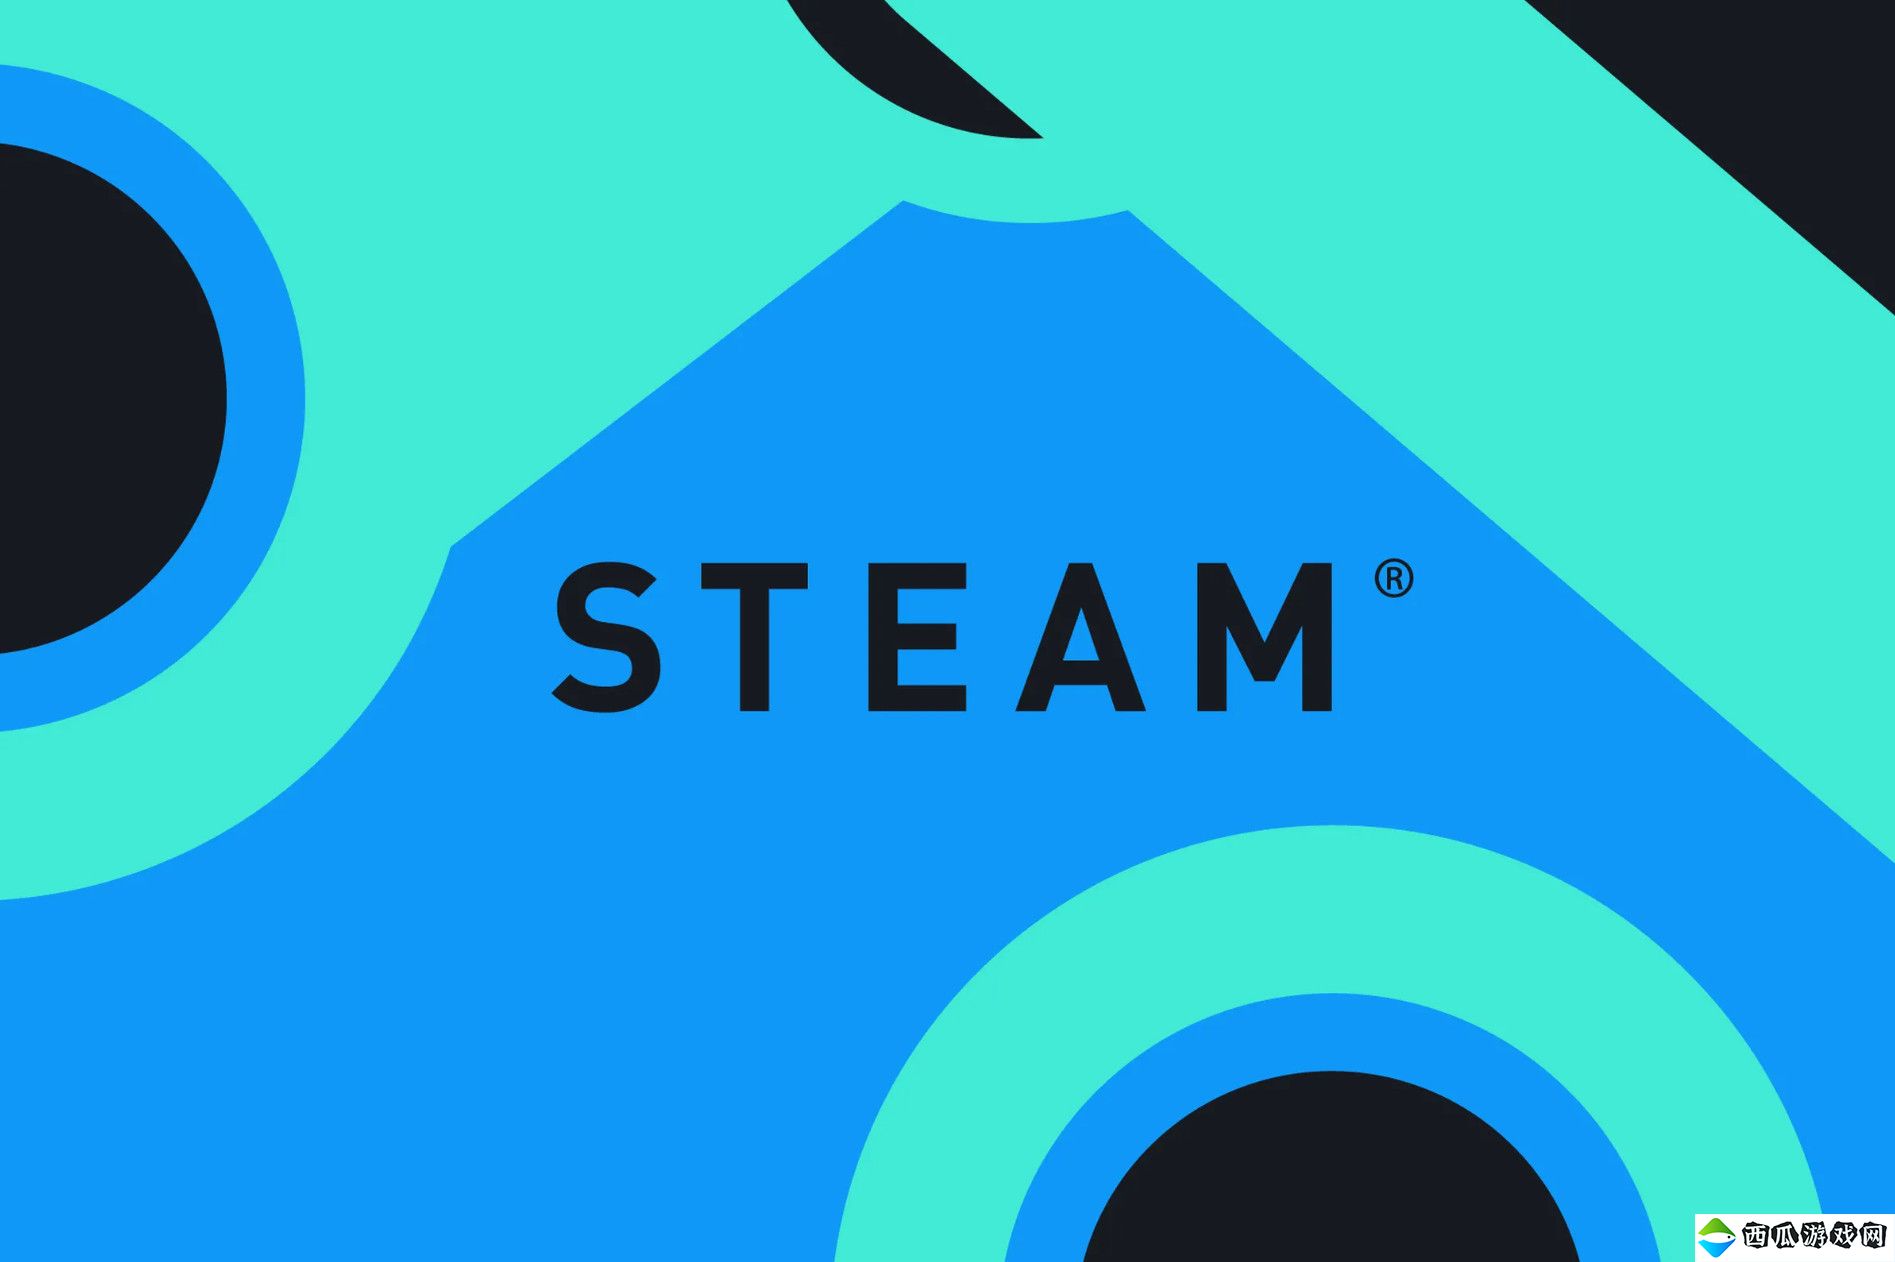 V社员工总数曝光 负责Steam运营仅79人、大部分员工仍专注于开发游戏